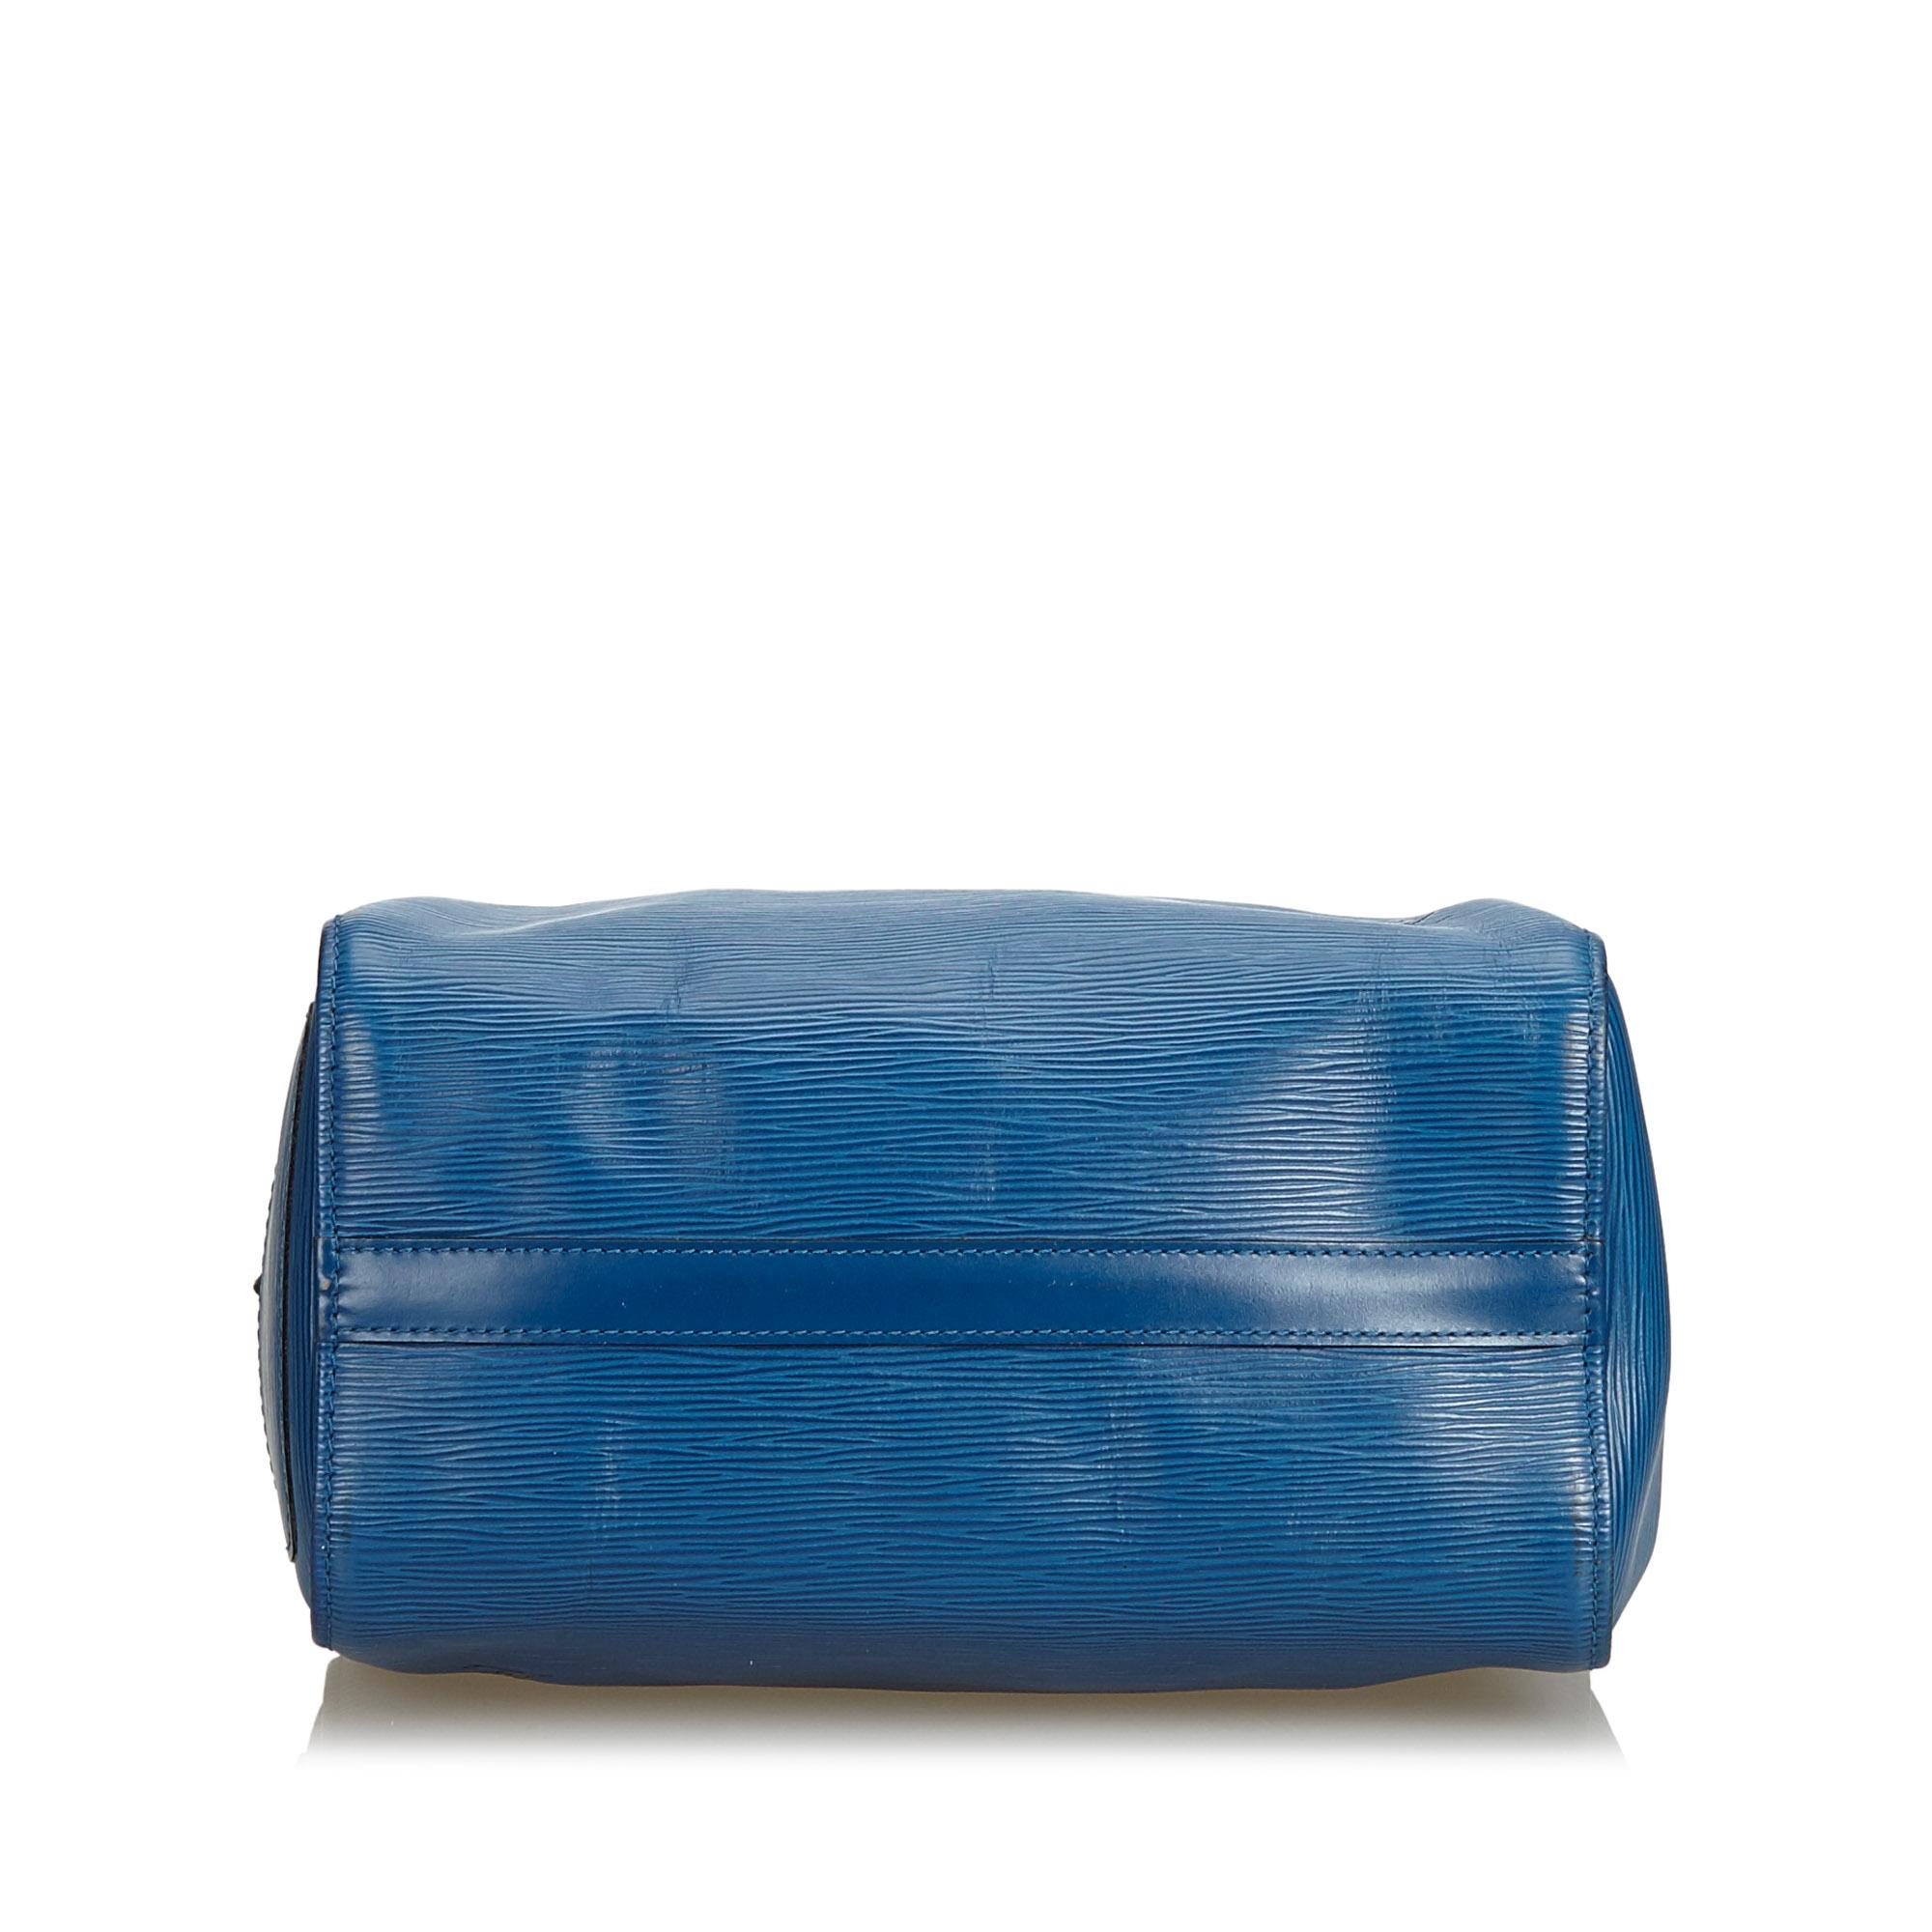 Women's Vintage Authentic Louis Vuitton Blue Epi Leather Speedy 25 France MEDIUM 